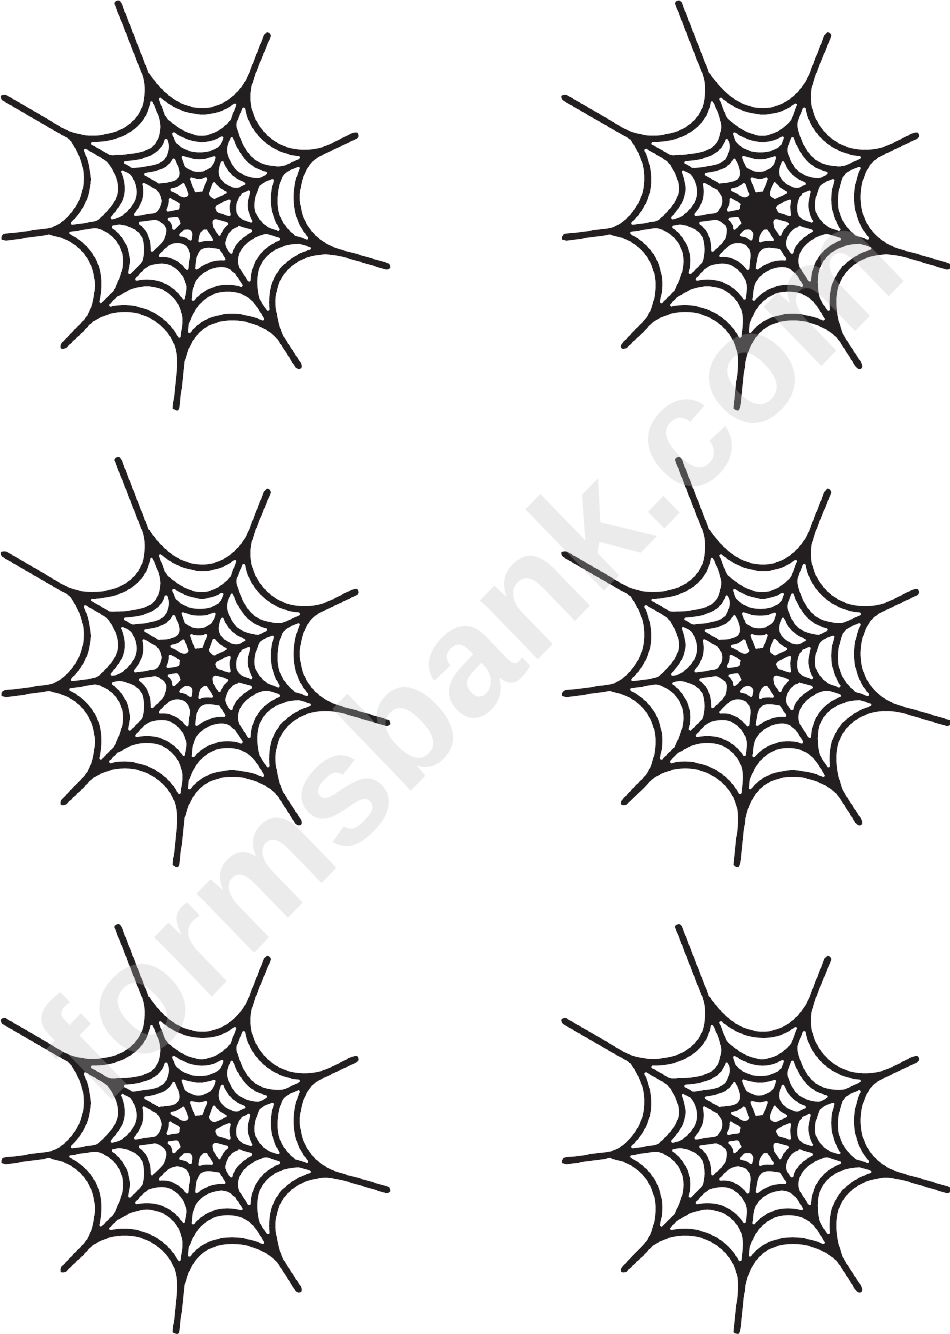 Small Spiderweb Templates